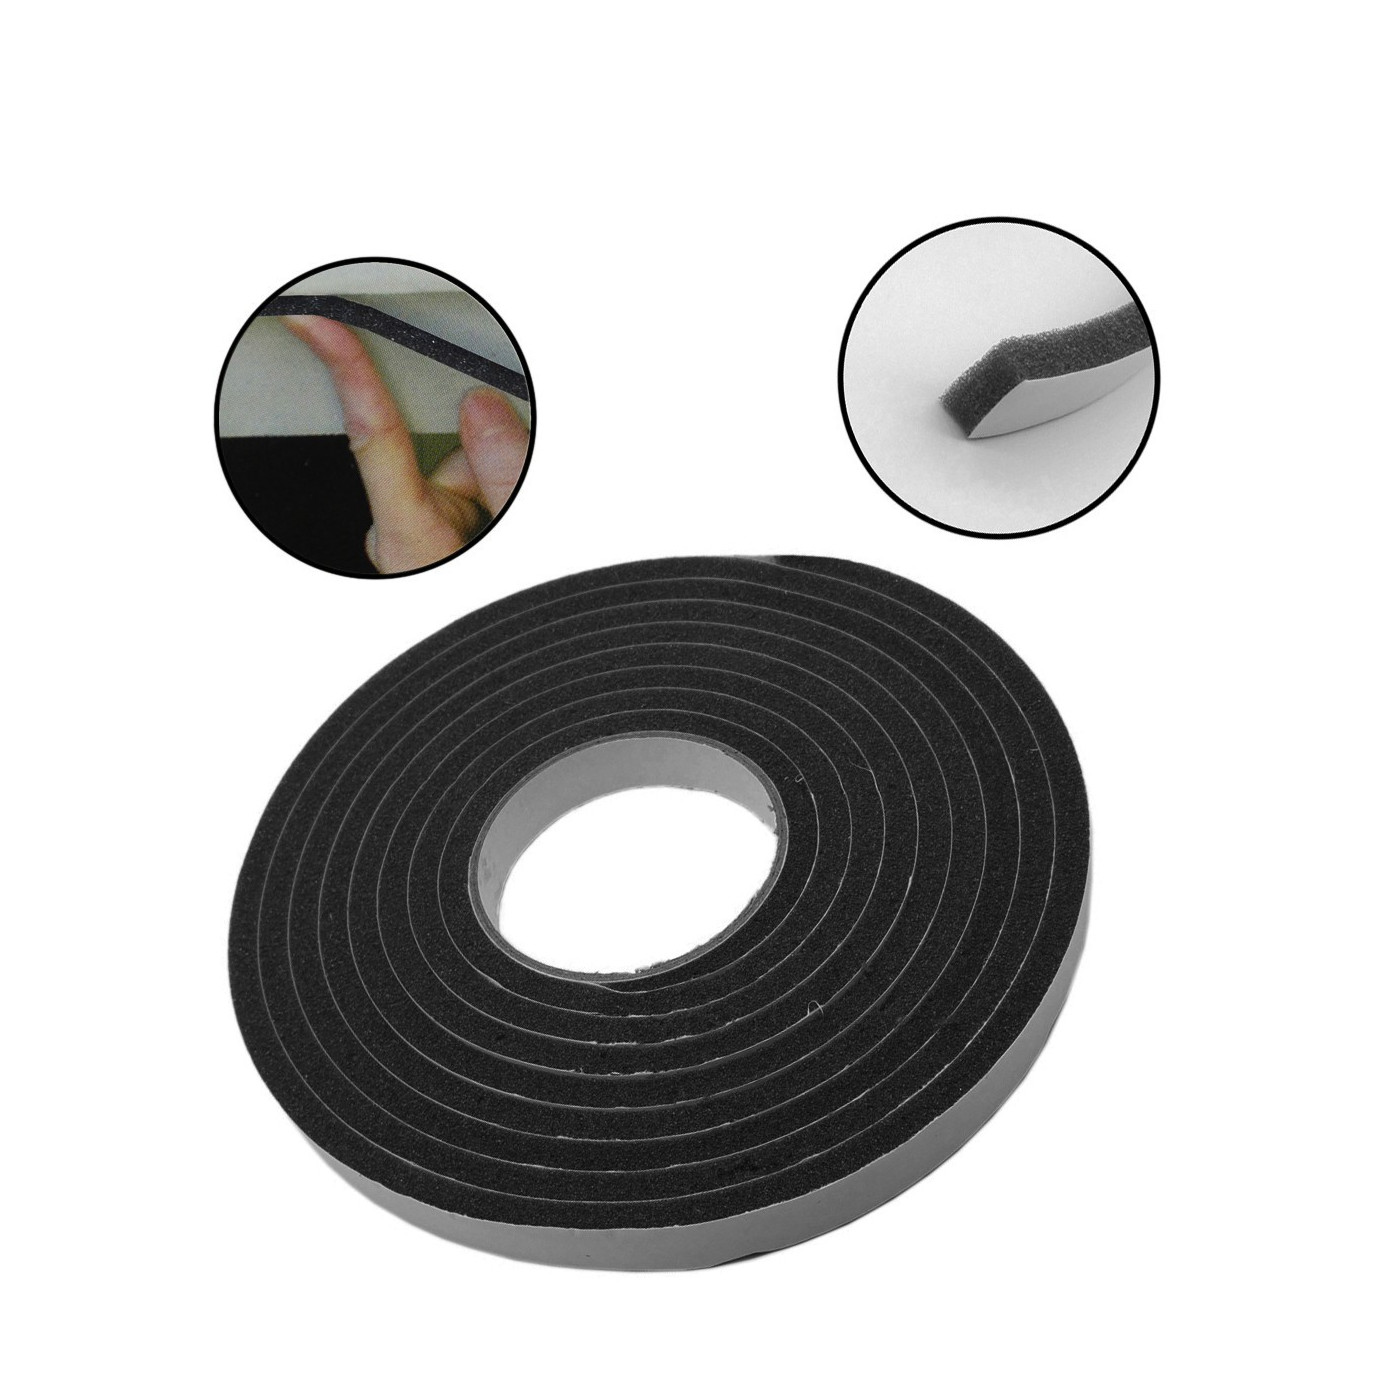 Set of 12 meters 18 mm sealing tape (grey/black foam)